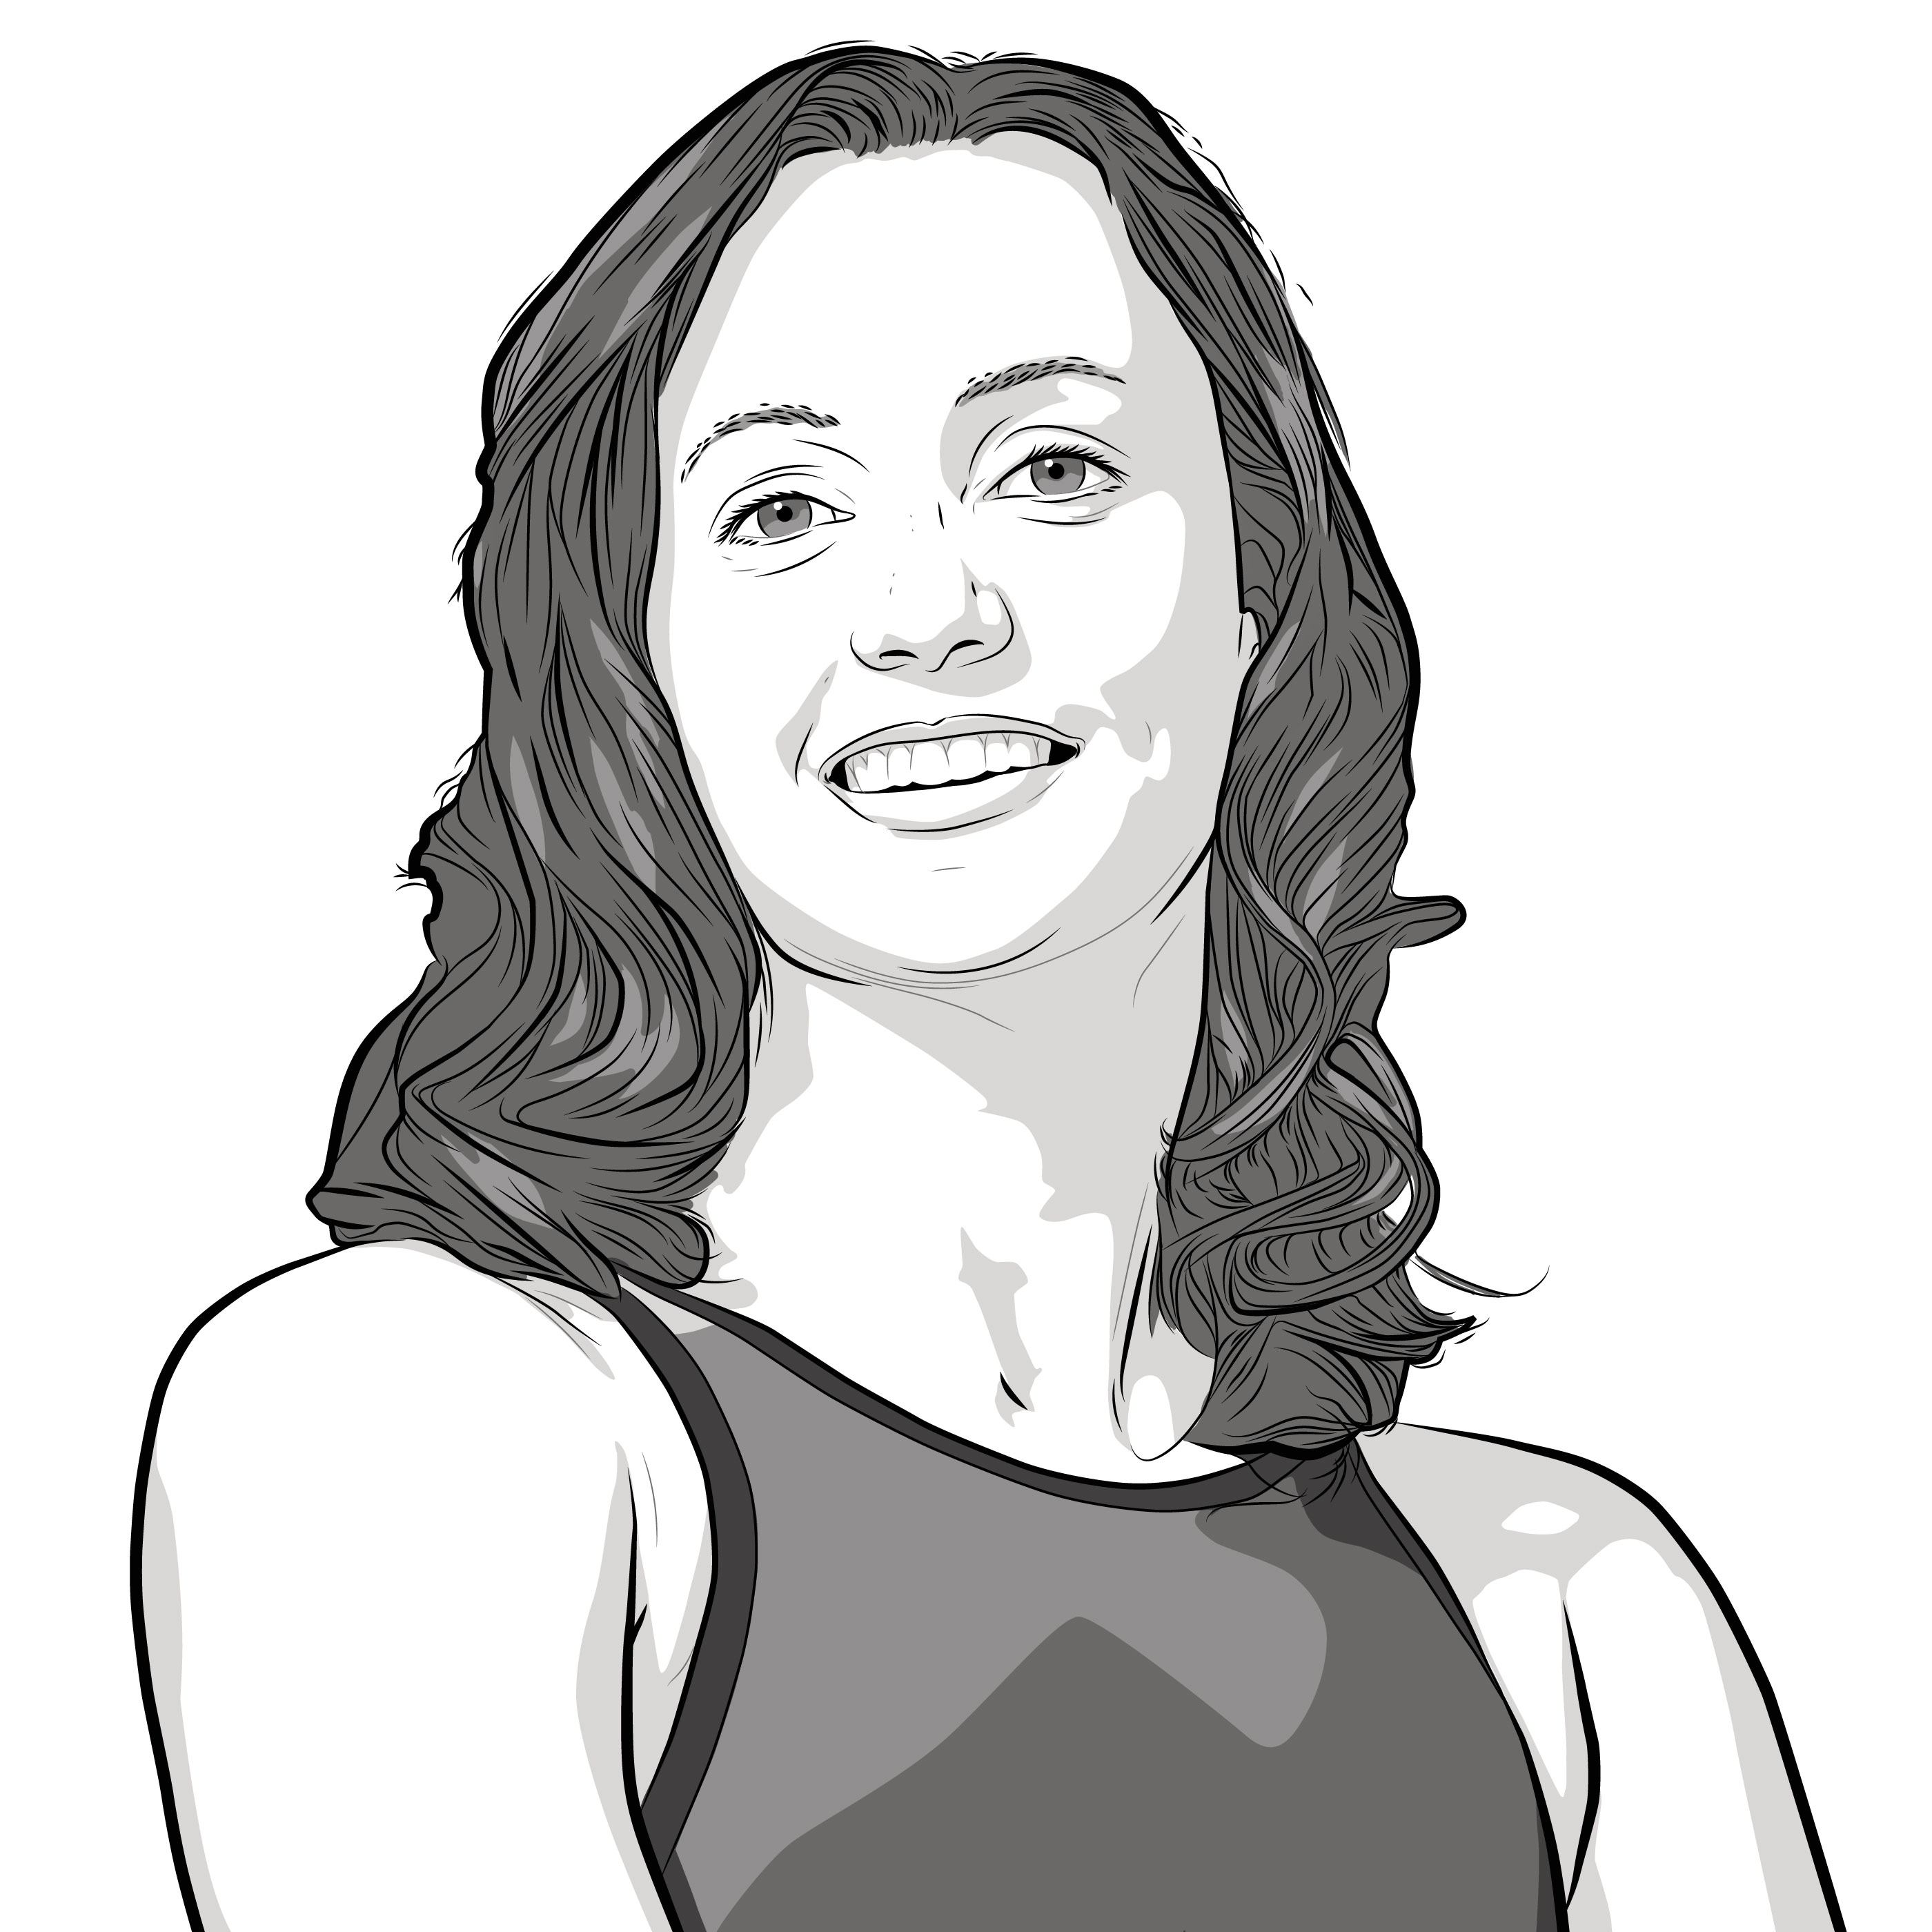 Athlete Portrait of Rebecca Soni, illustration by Max Hancock